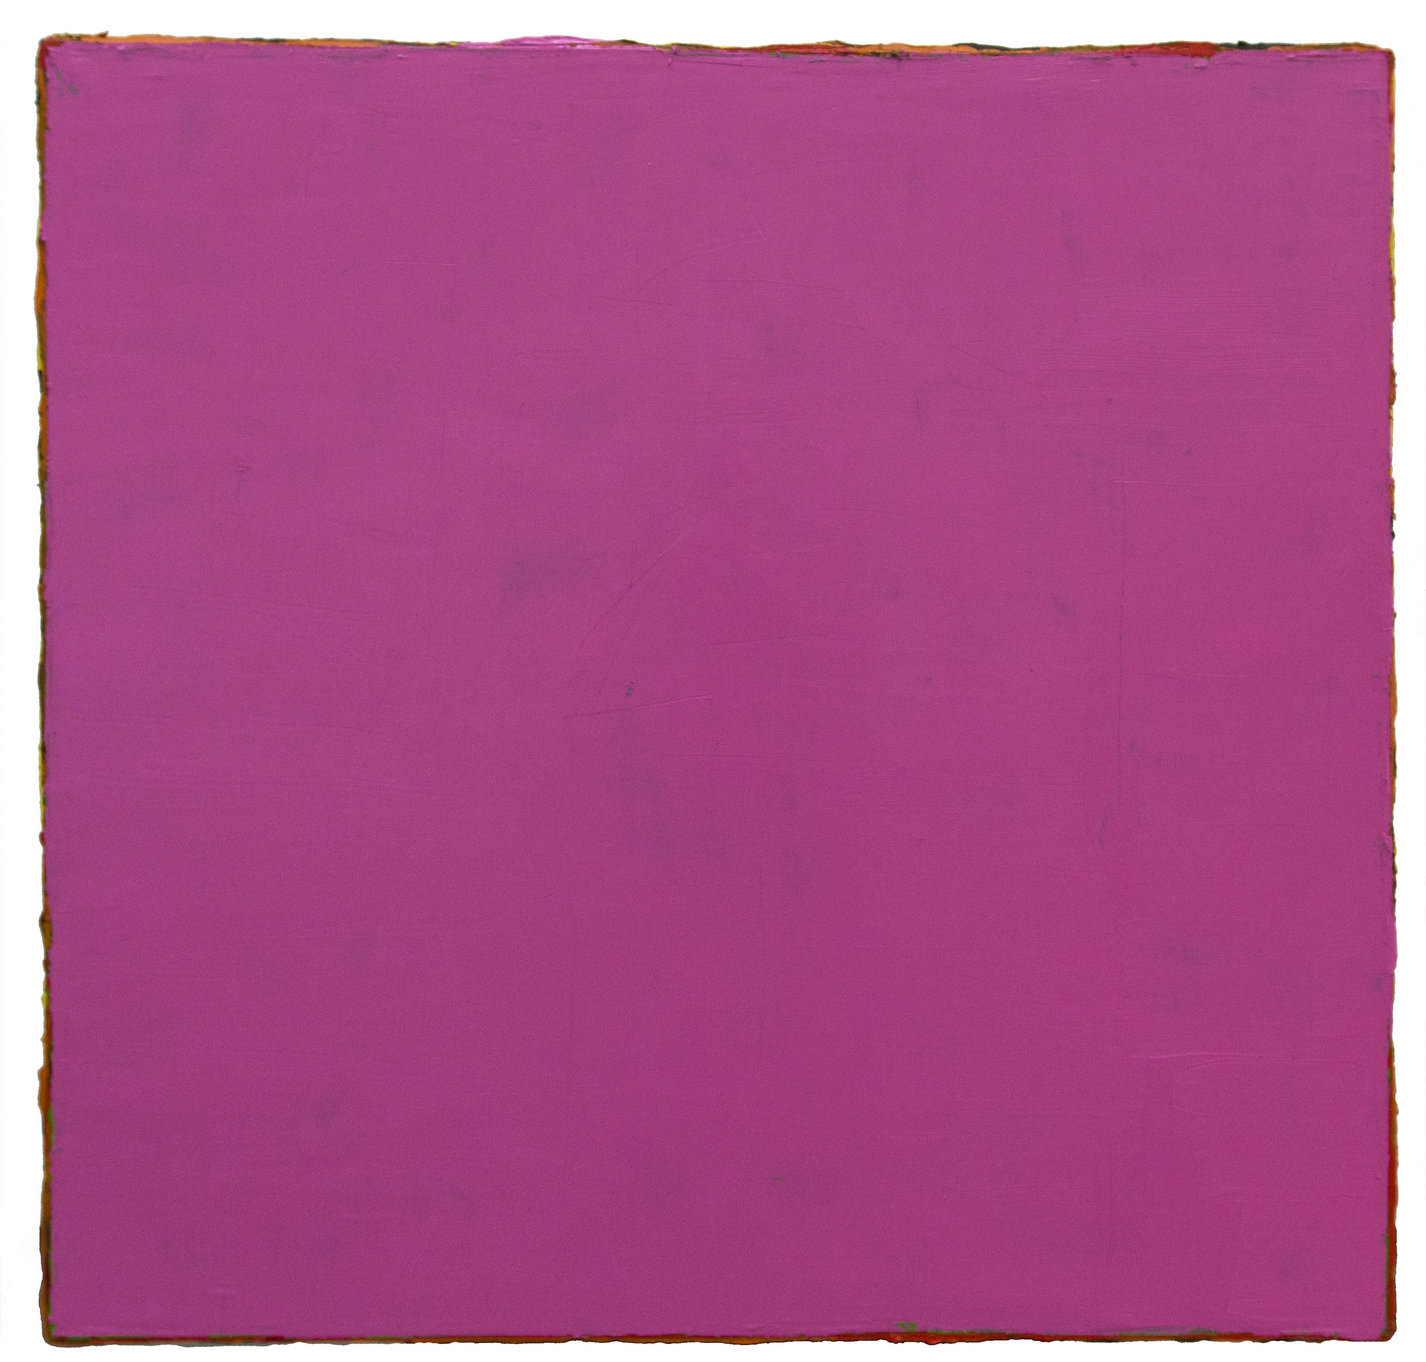 无题2015—3 2015 油画亚麻布153×153cm